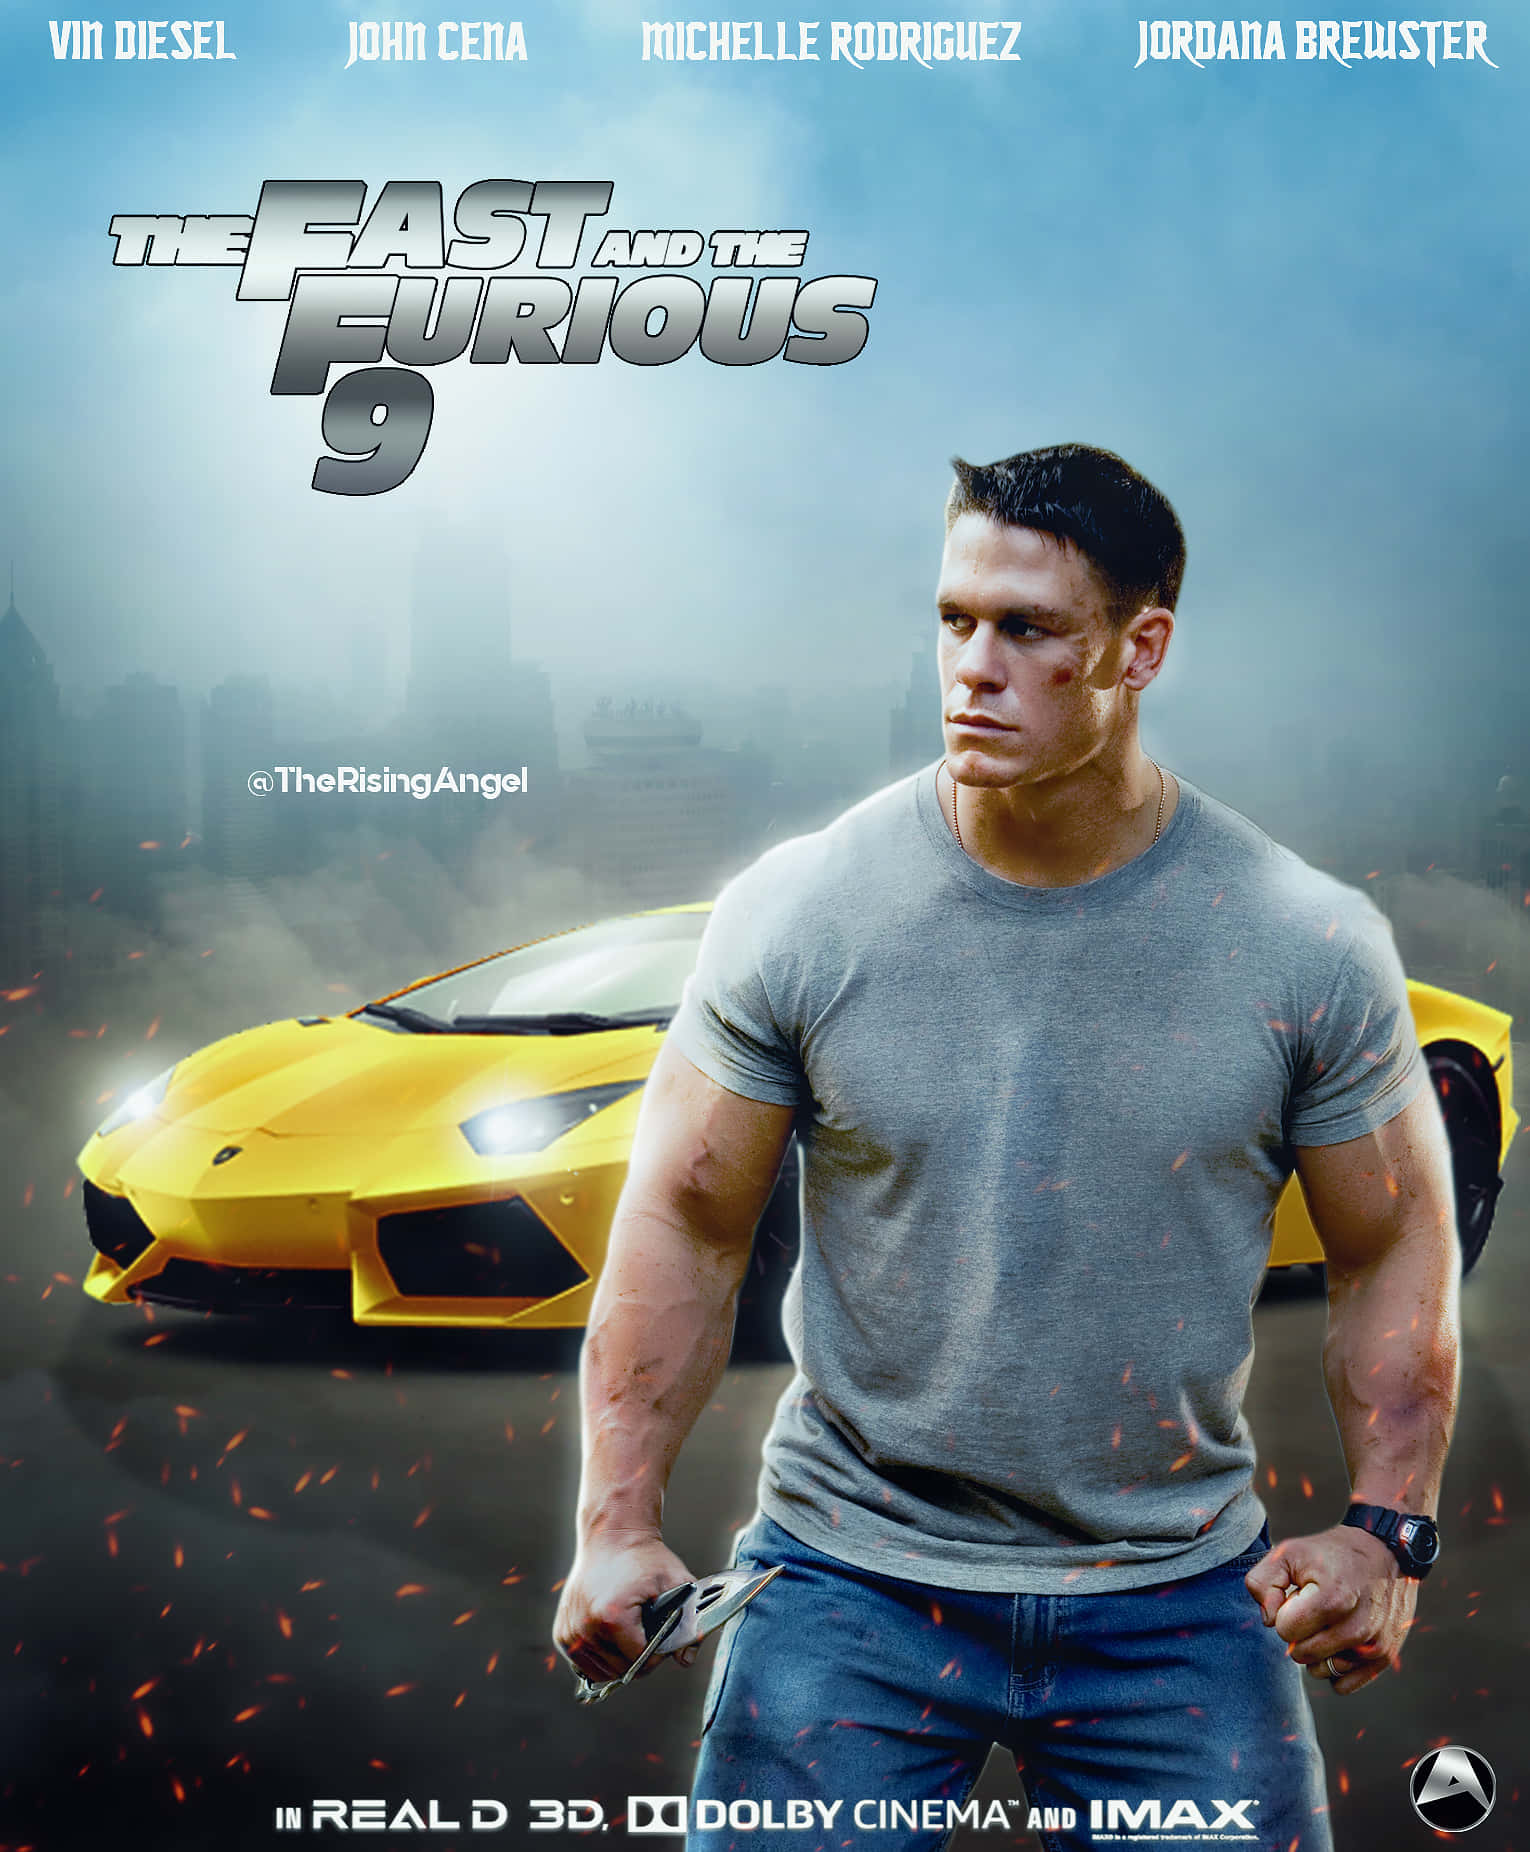 Vindiesel Kehrt Als Dominic Toretto In Fast & Furious 9 Zurück. Wallpaper